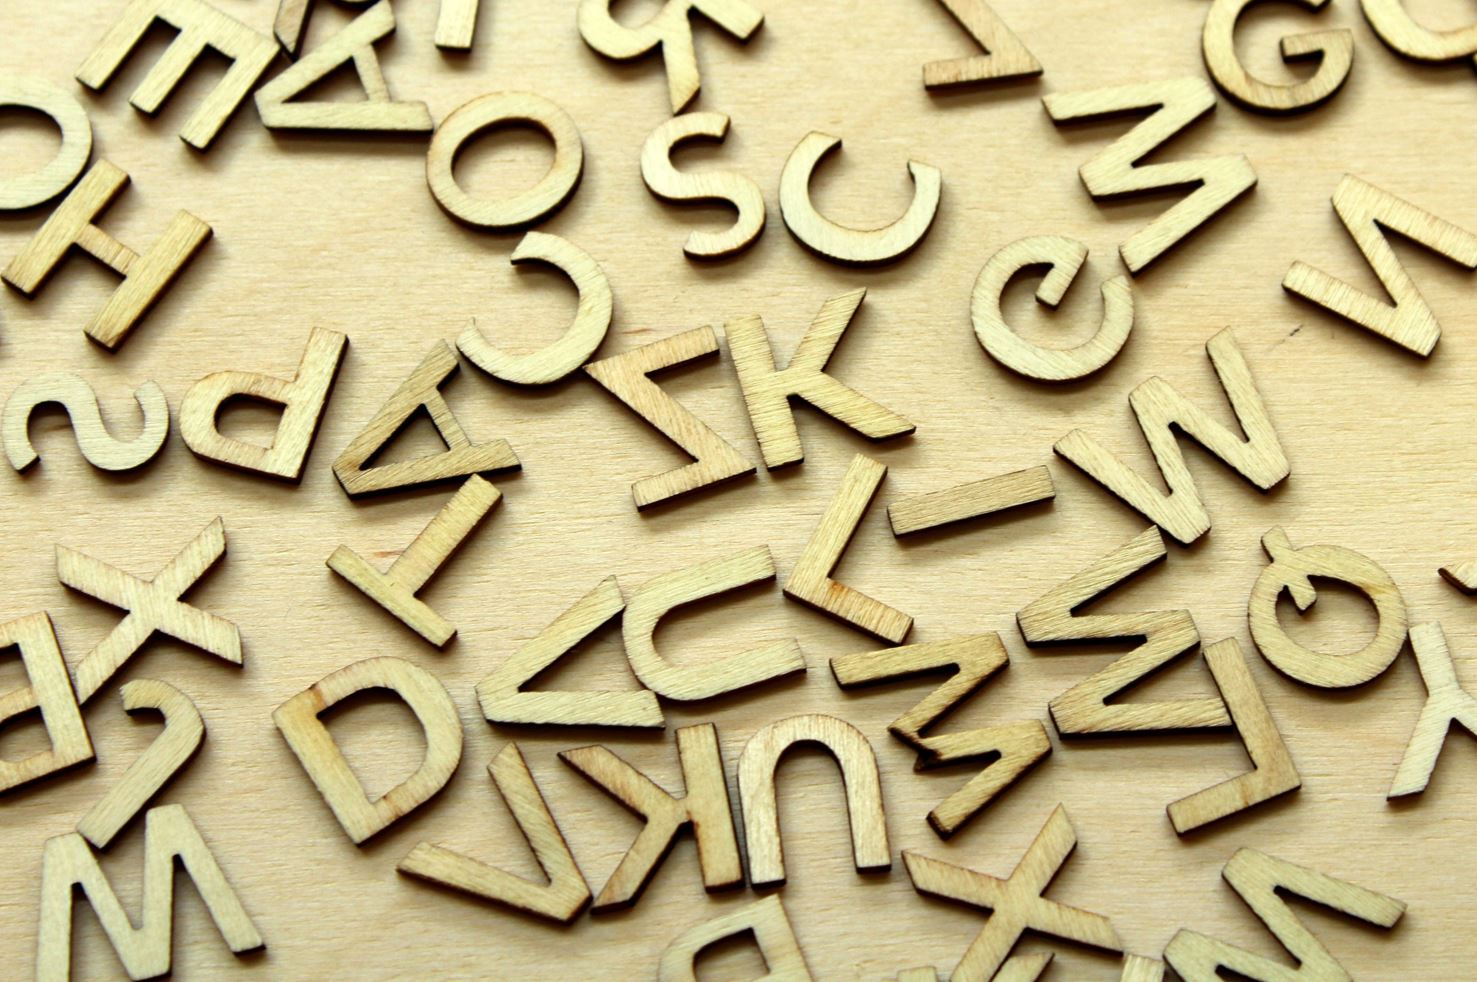 La creación de nuevos significados de las palabras tiene razones comunes en 1.400 lenguas, según un estudio liderado por la UPF publicado en Science